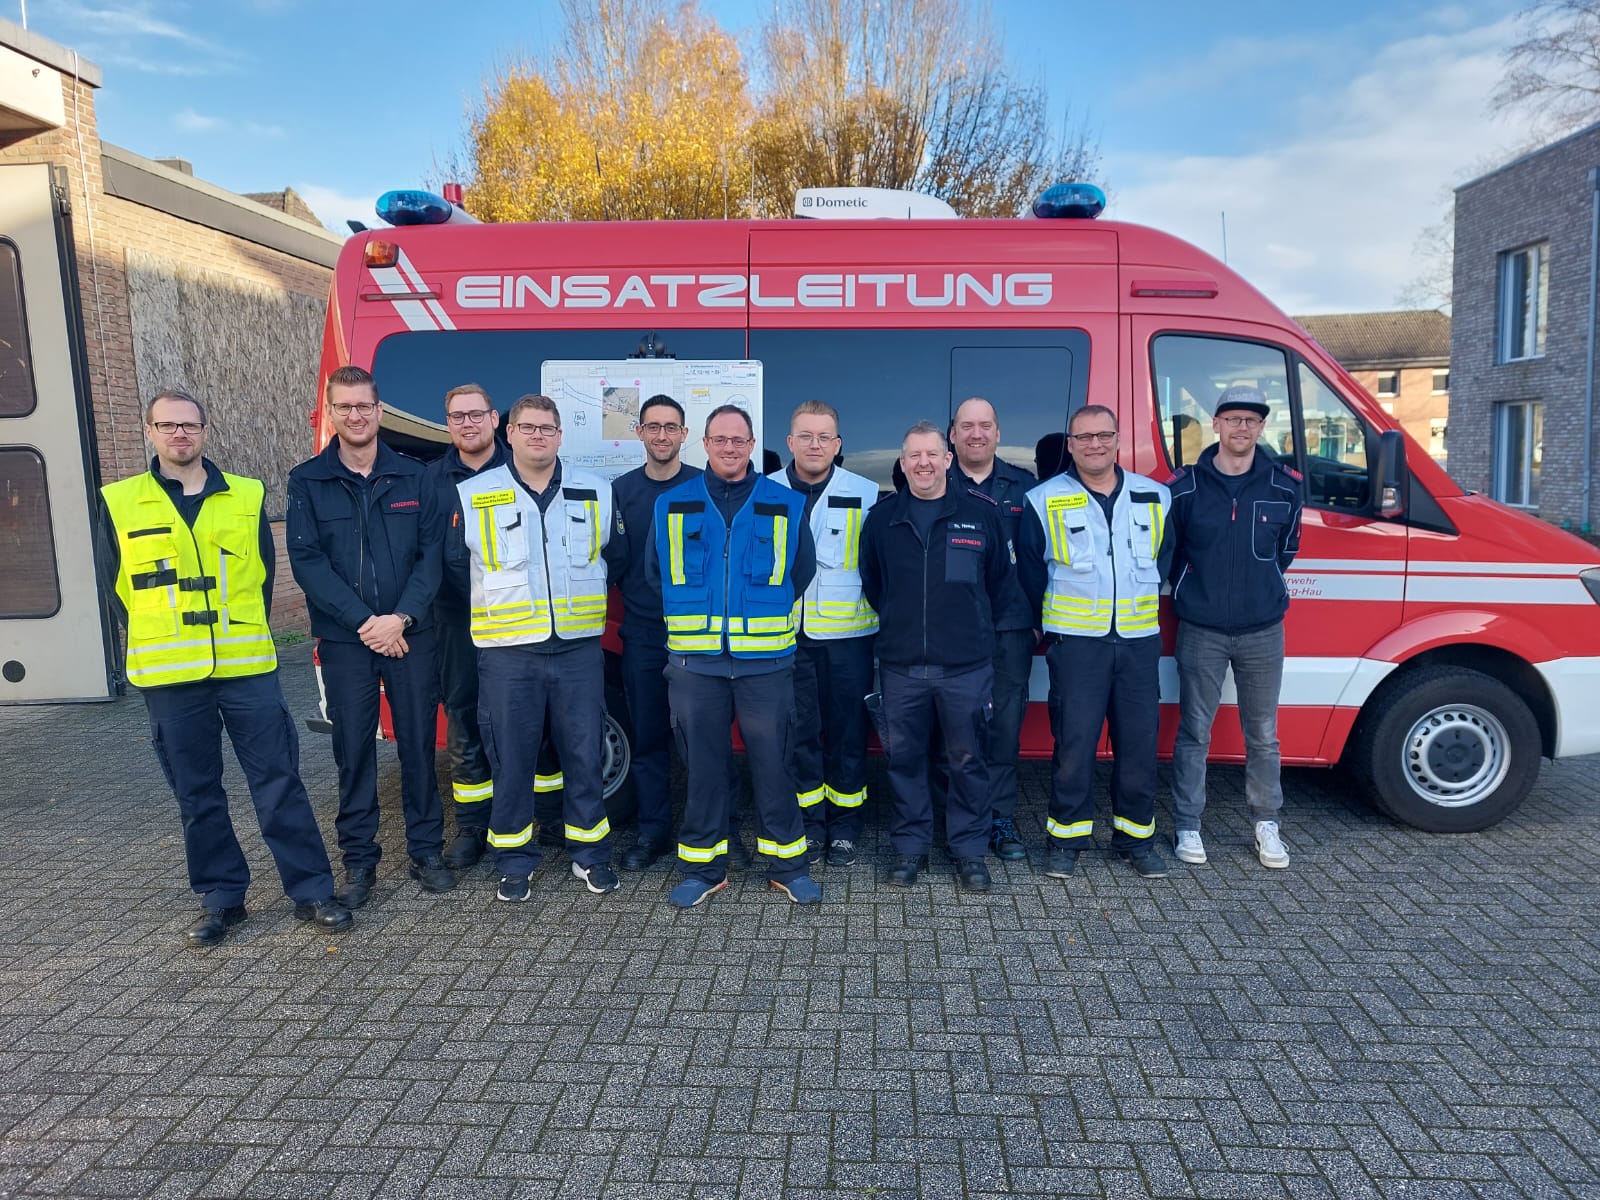 Bedburg-Hau: Kommunikation soll helfen - Feuerwehr soll im Notfall flexibler werden